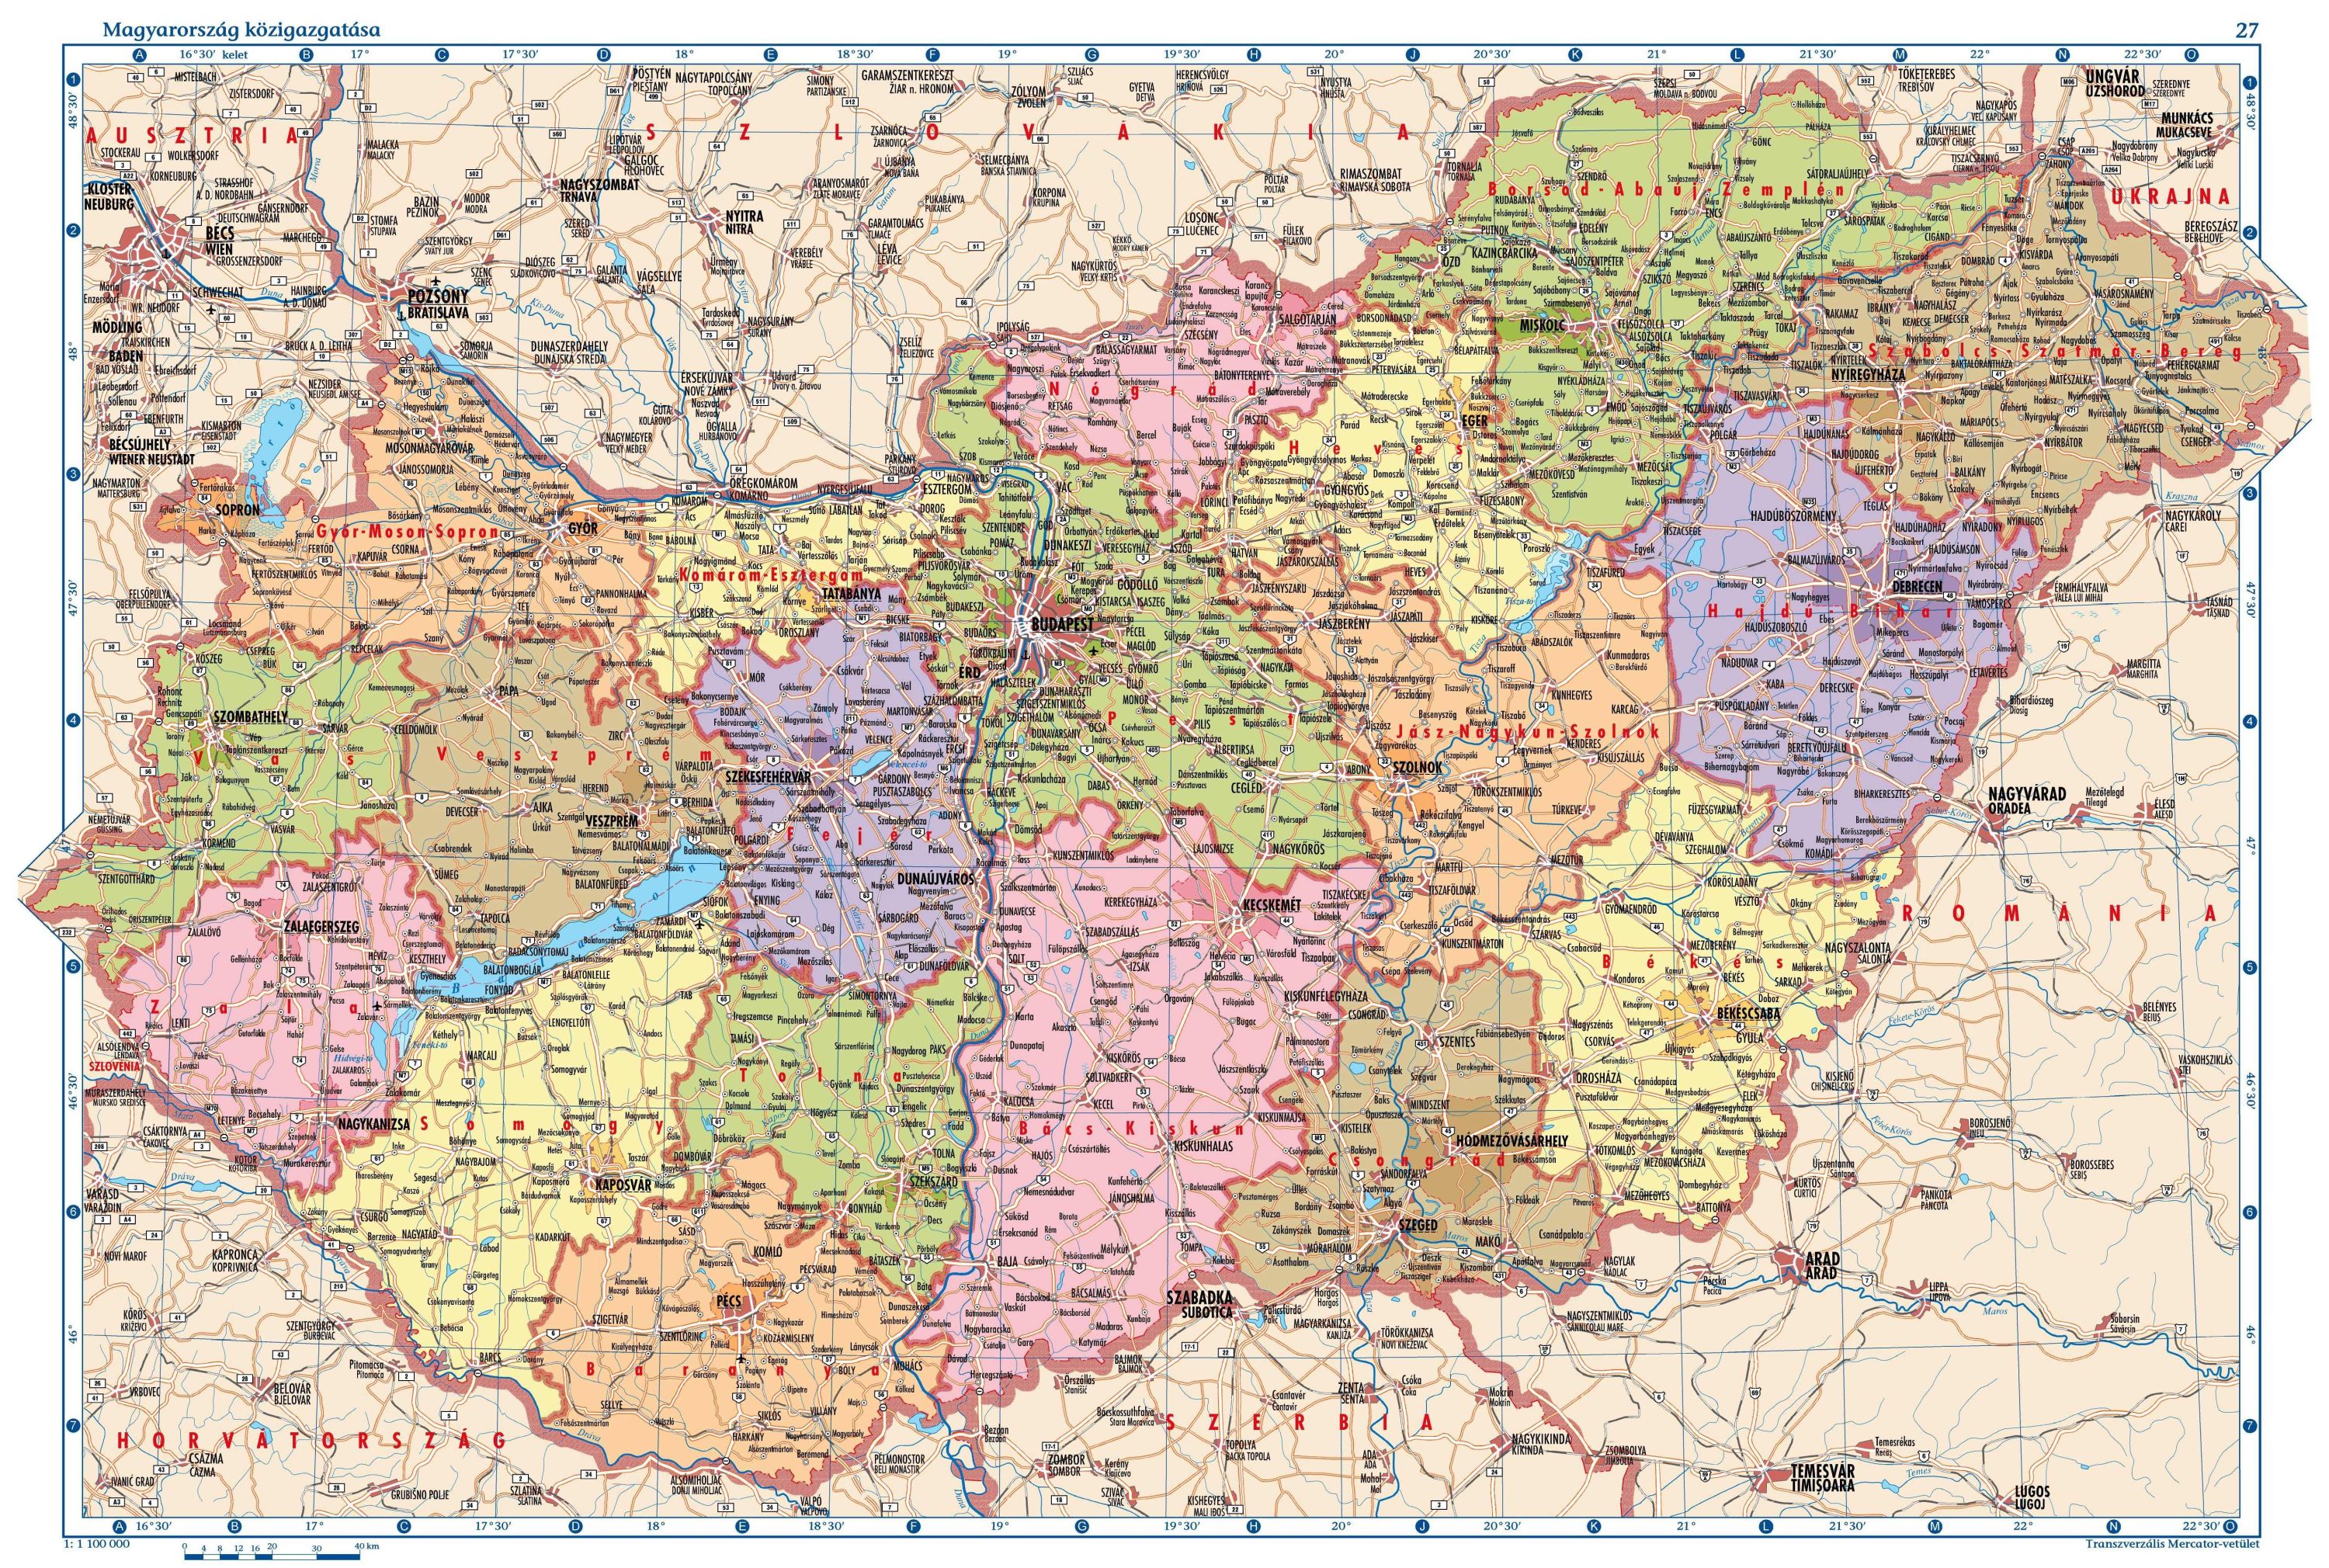 magyarország megye térképe részletesen Terkep Magyarorszag Reszletes Europa Terkep magyarország megye térképe részletesen